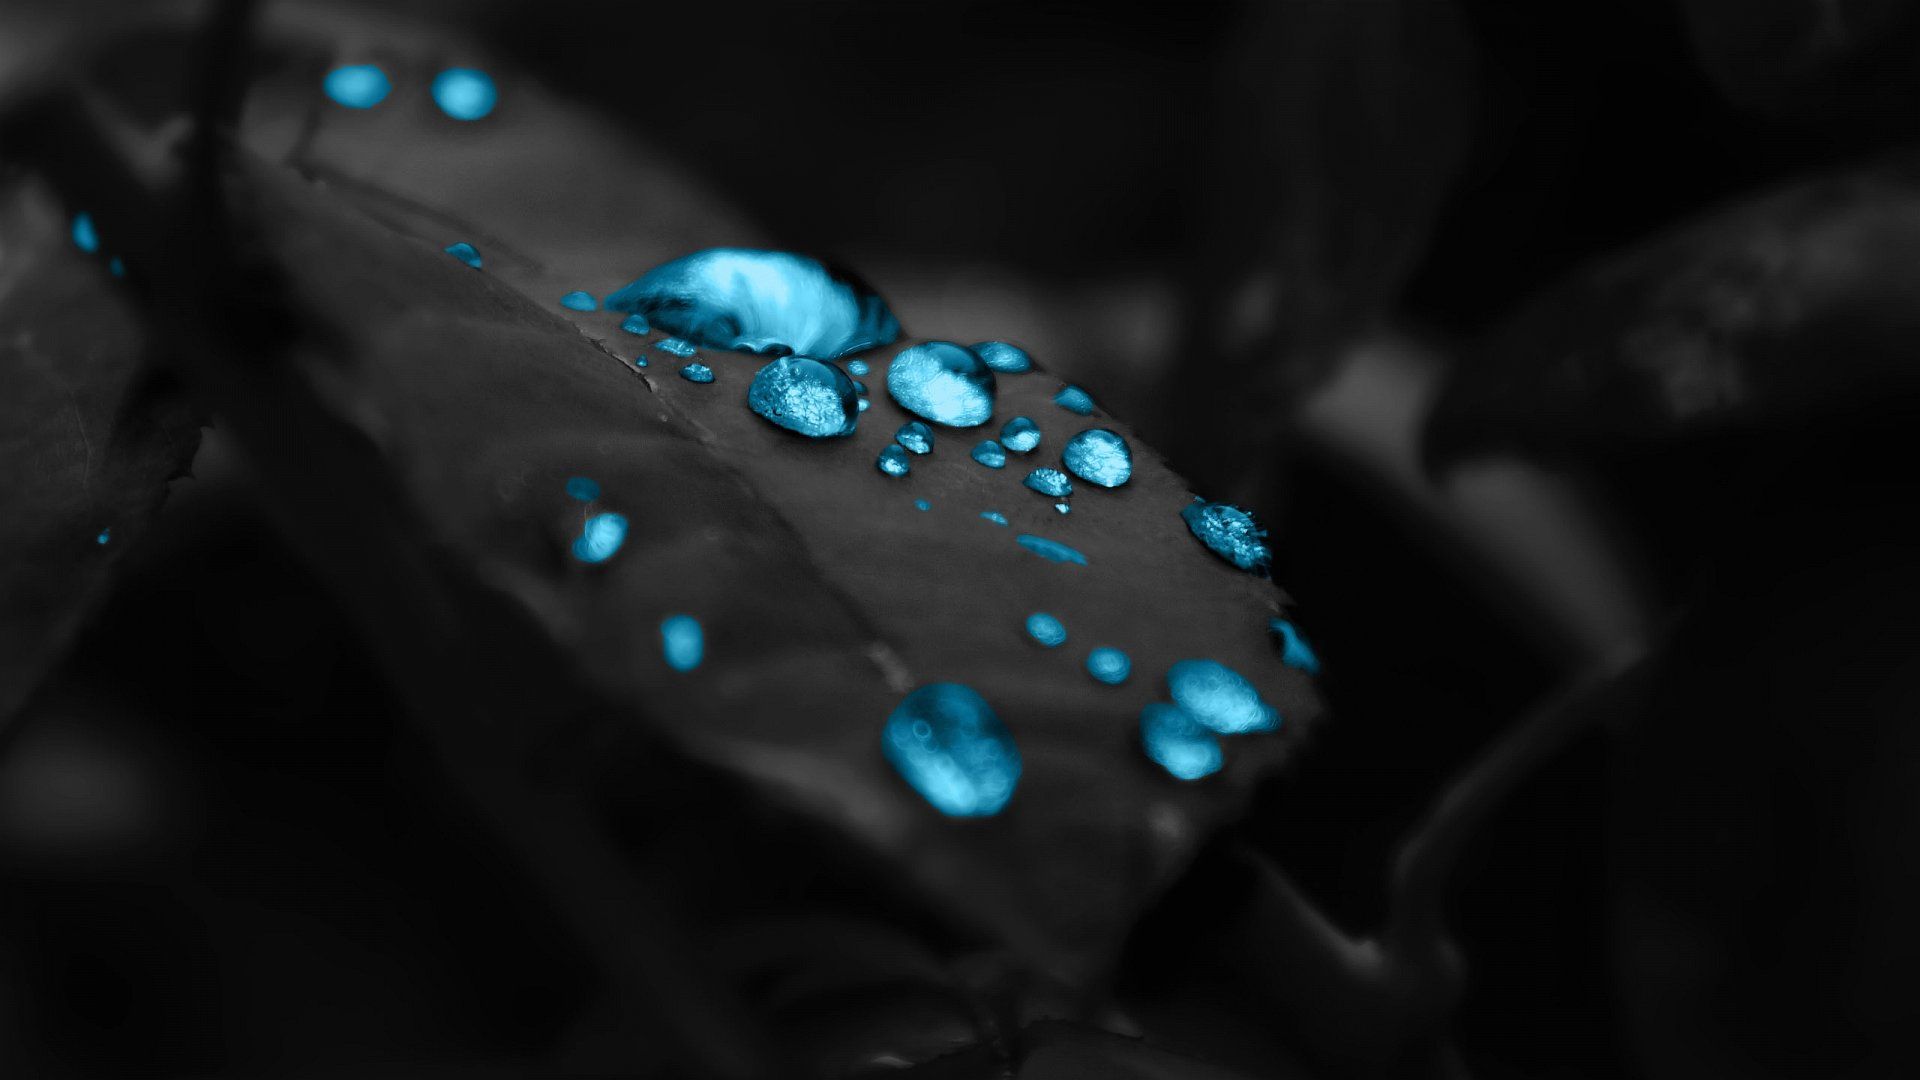 Wallpaper Blue Drops In A Black Leaf 1920 X 1080 Full Hd - 1920 x